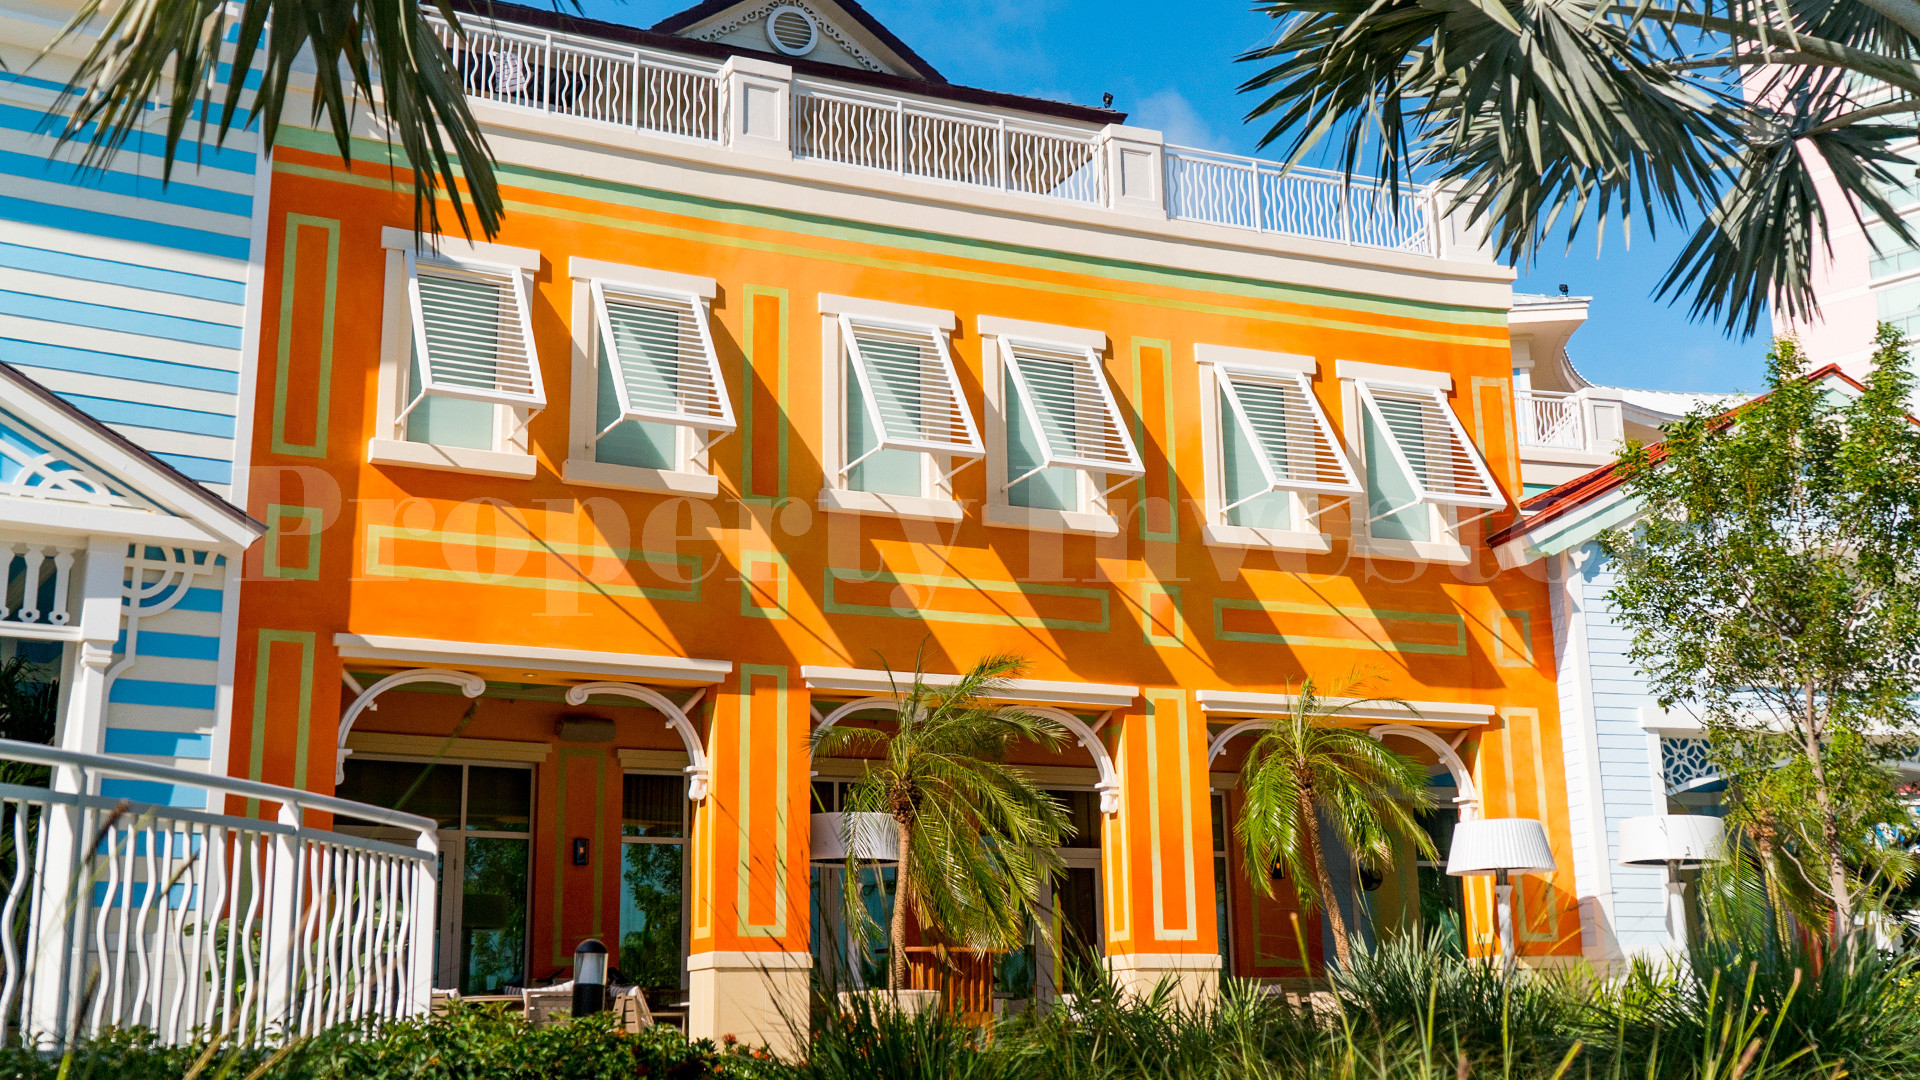 3 Bedroom Condo-Hotel Suite in the Bahamas (Suite 213)